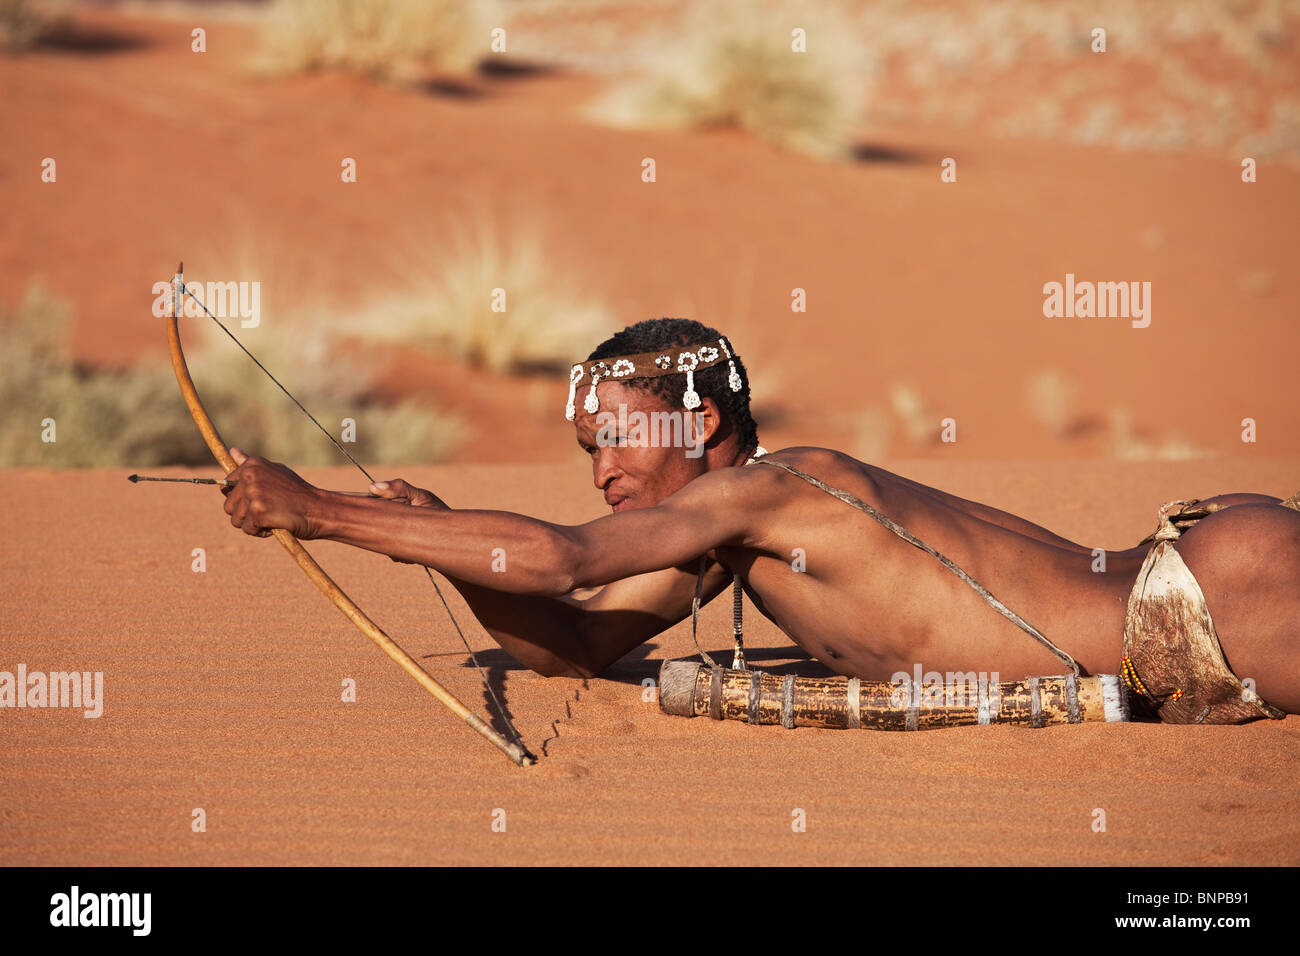 Bushman/pueblo San. San macho cazador armado con arco y flechas tradicionales. Foto de stock